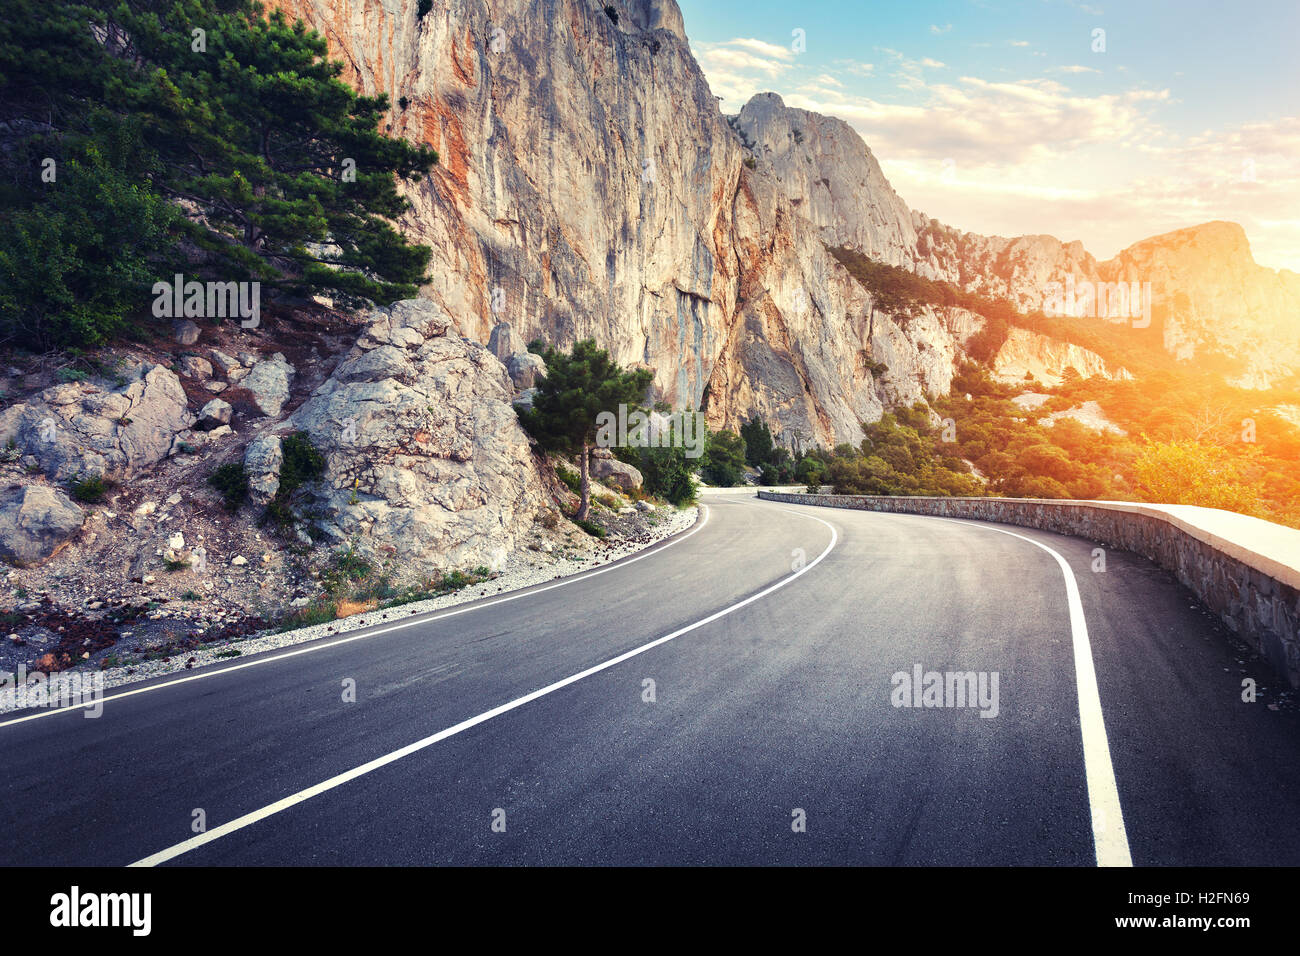 Schöne asphaltierte Straße. Bunte Landschaft mit hohen Felsen, Bergstraße mit perfekter Asphalt, Bäume, blauer Himmel bei Sonnenuntergang in s Stockfoto